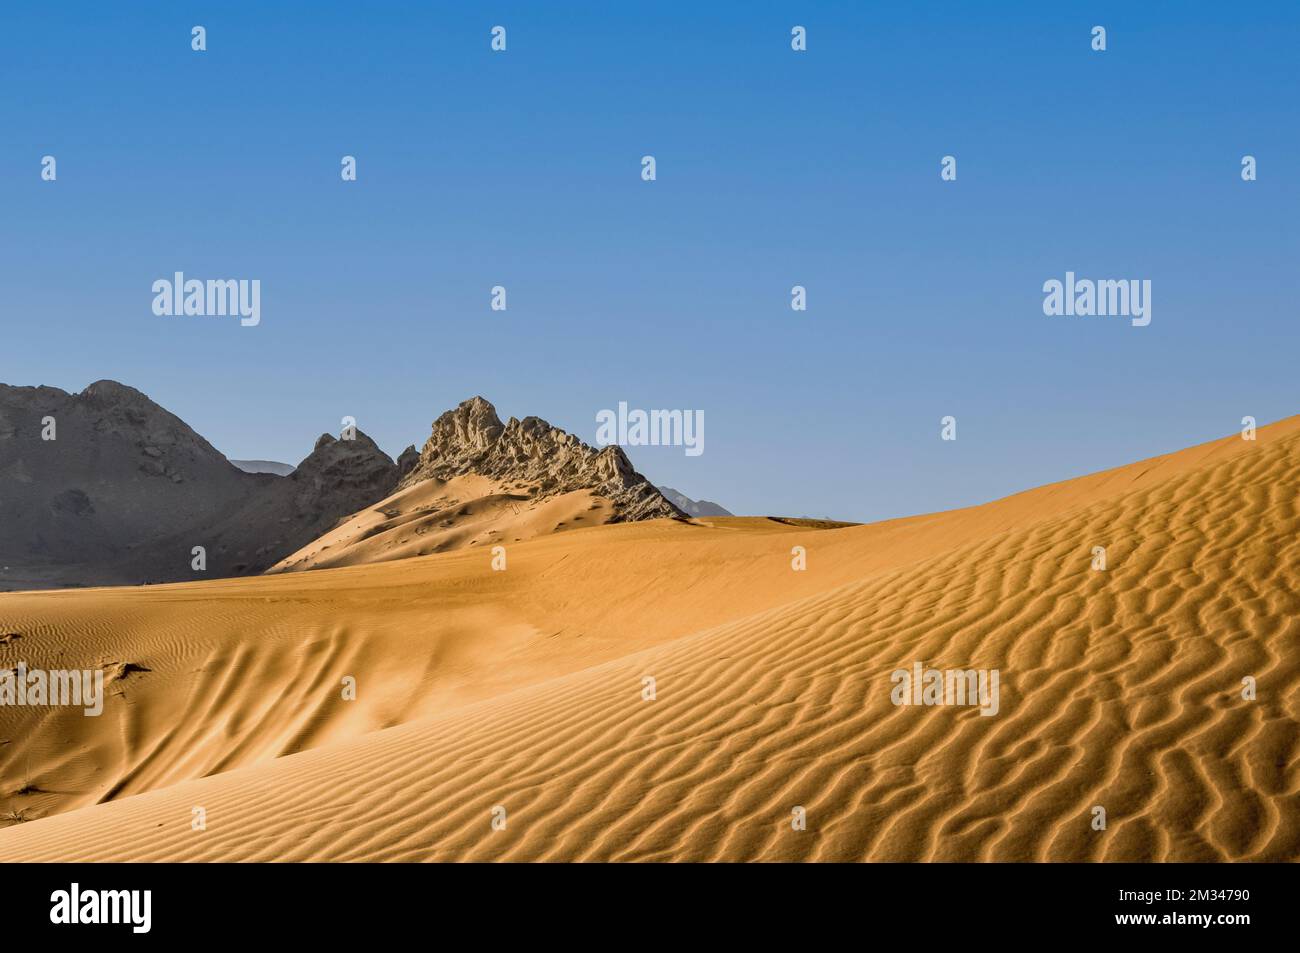 Dunes de sable et montagnes rocheuses dans le désert arabe Banque D'Images